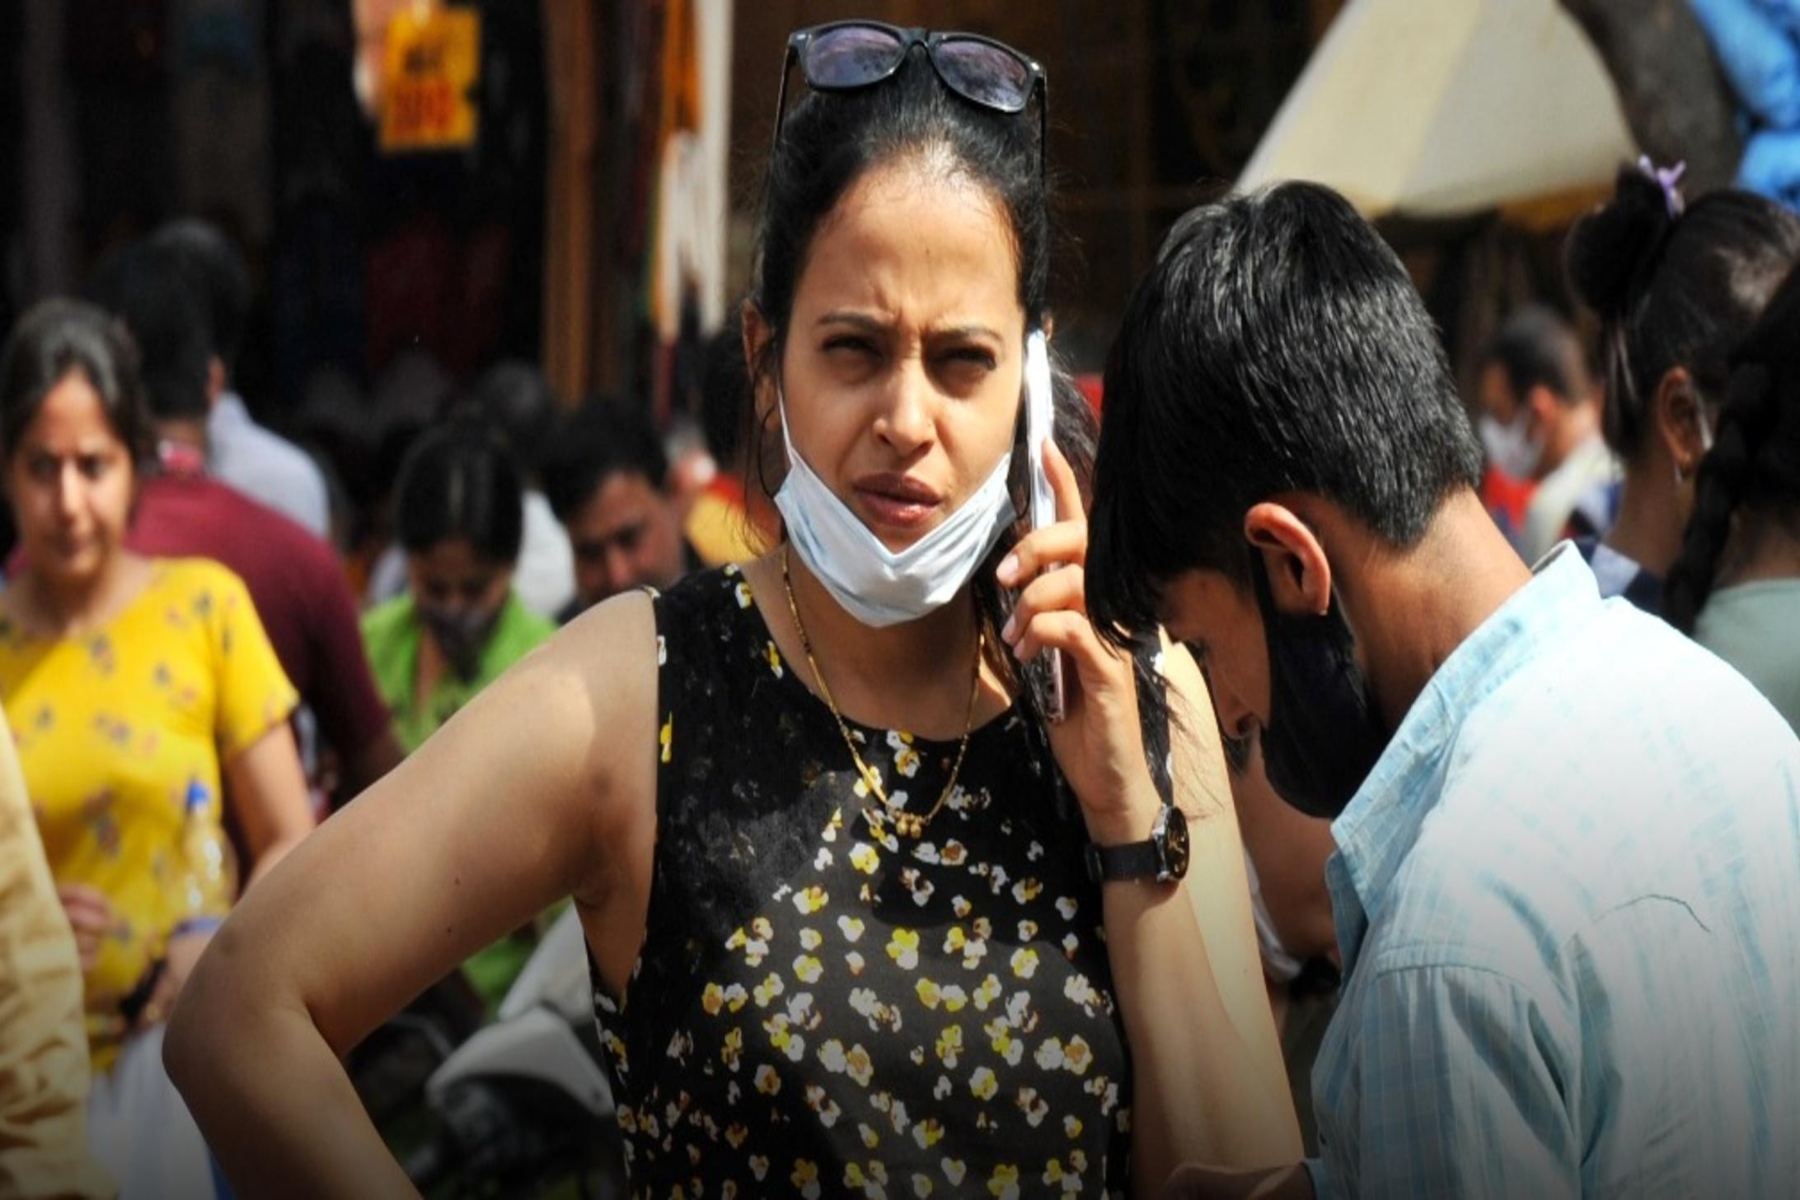 Ινδία μάσκες κορωνοϊός: 1 στους 3 Ινδούς ακόμη δεν φορά μάσκα ως μέσο προστασίας